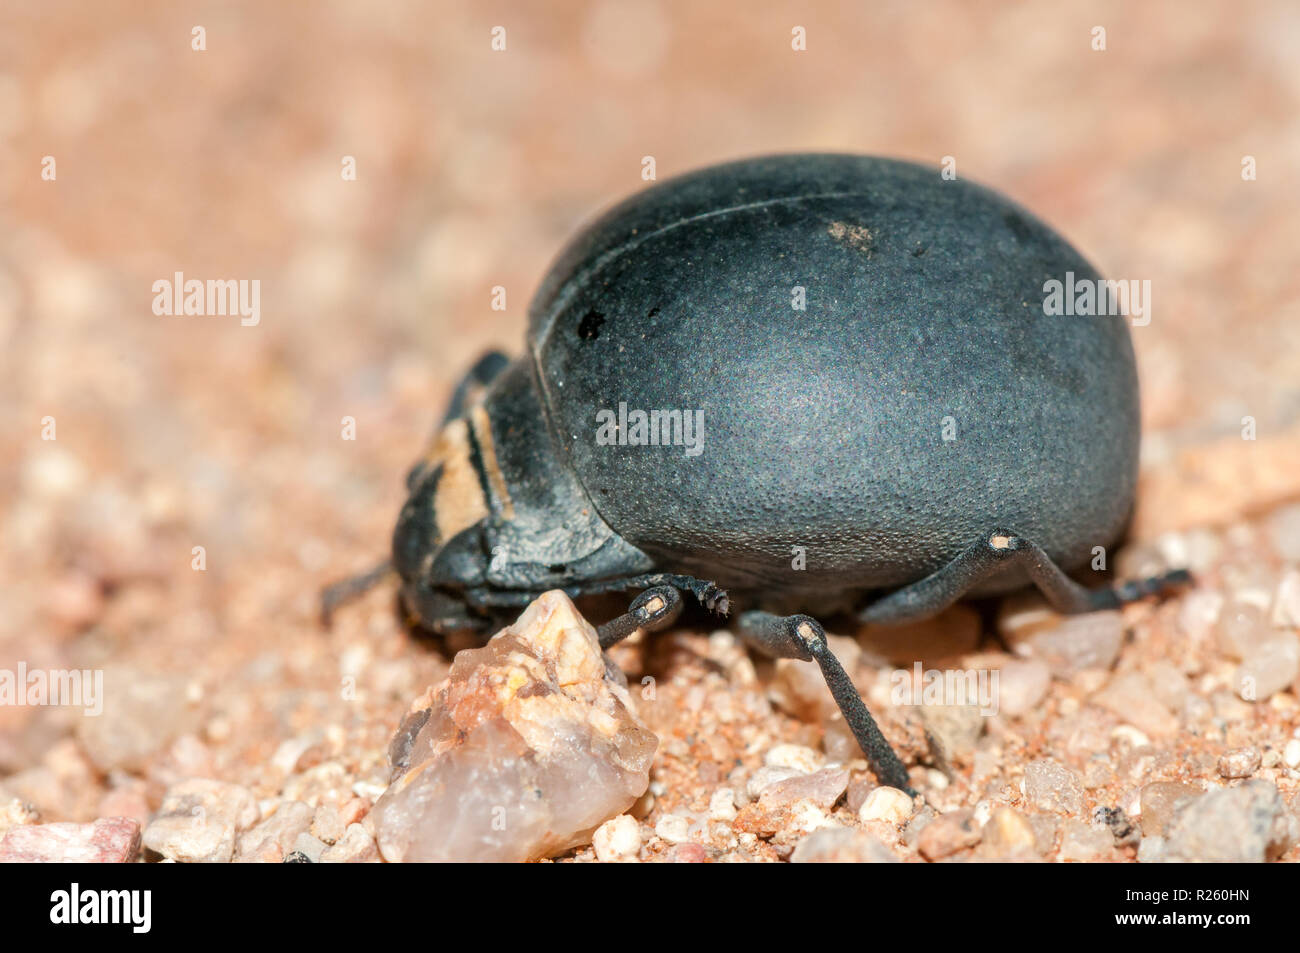 Epsphysa sp, beetle, Namibia Stock Photo